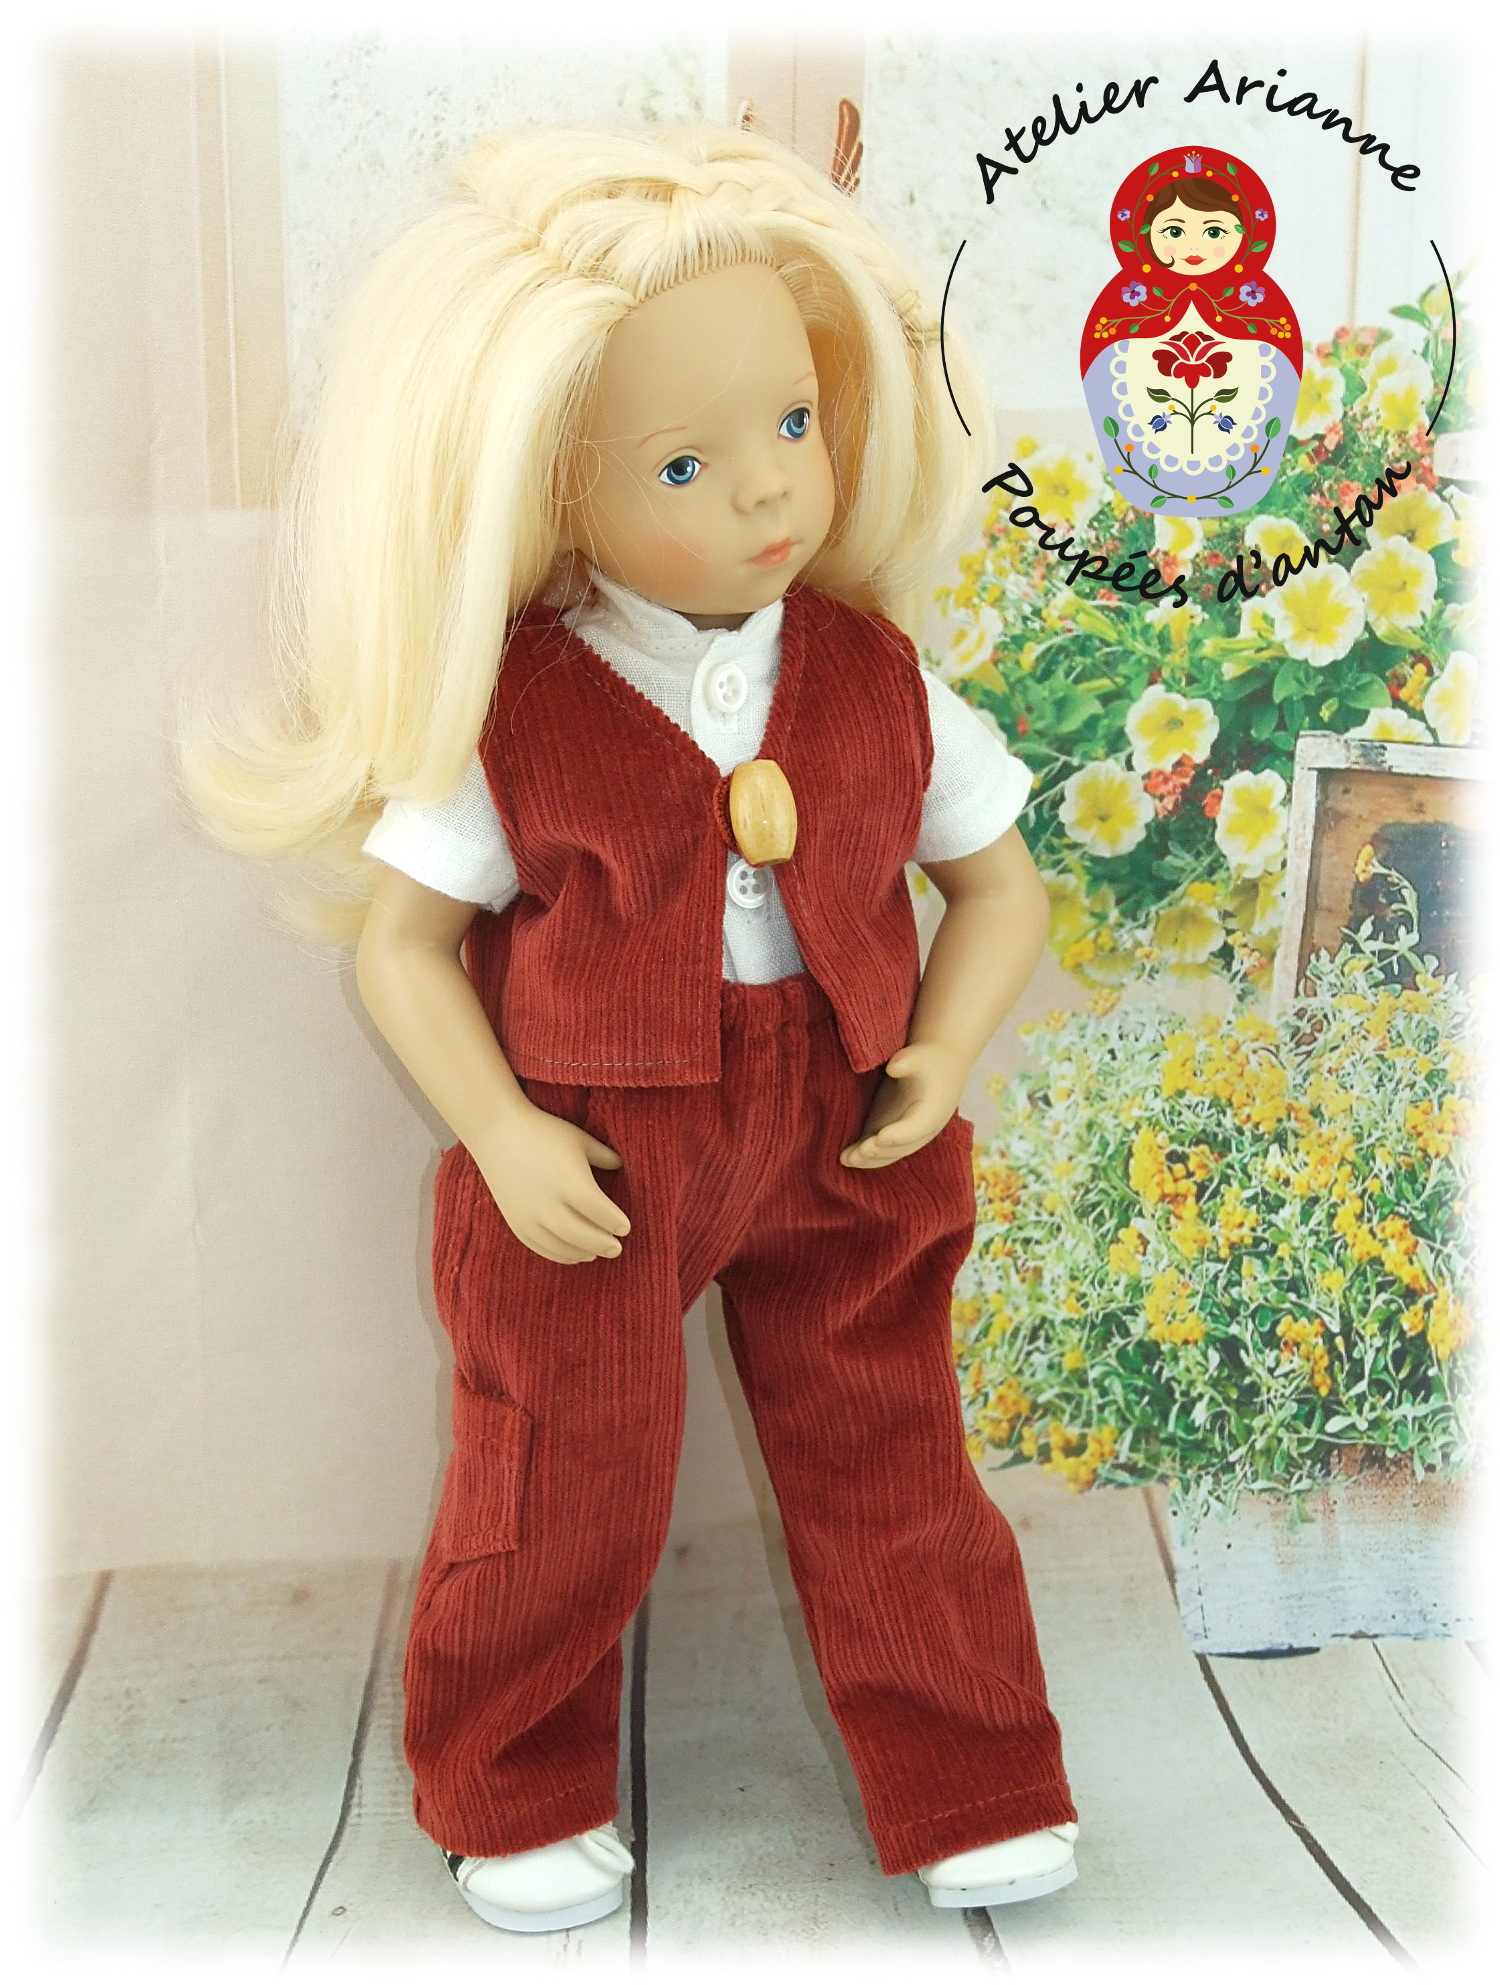 Edward -Tenue pour poupée Minouche de Petitcollin (garçon)